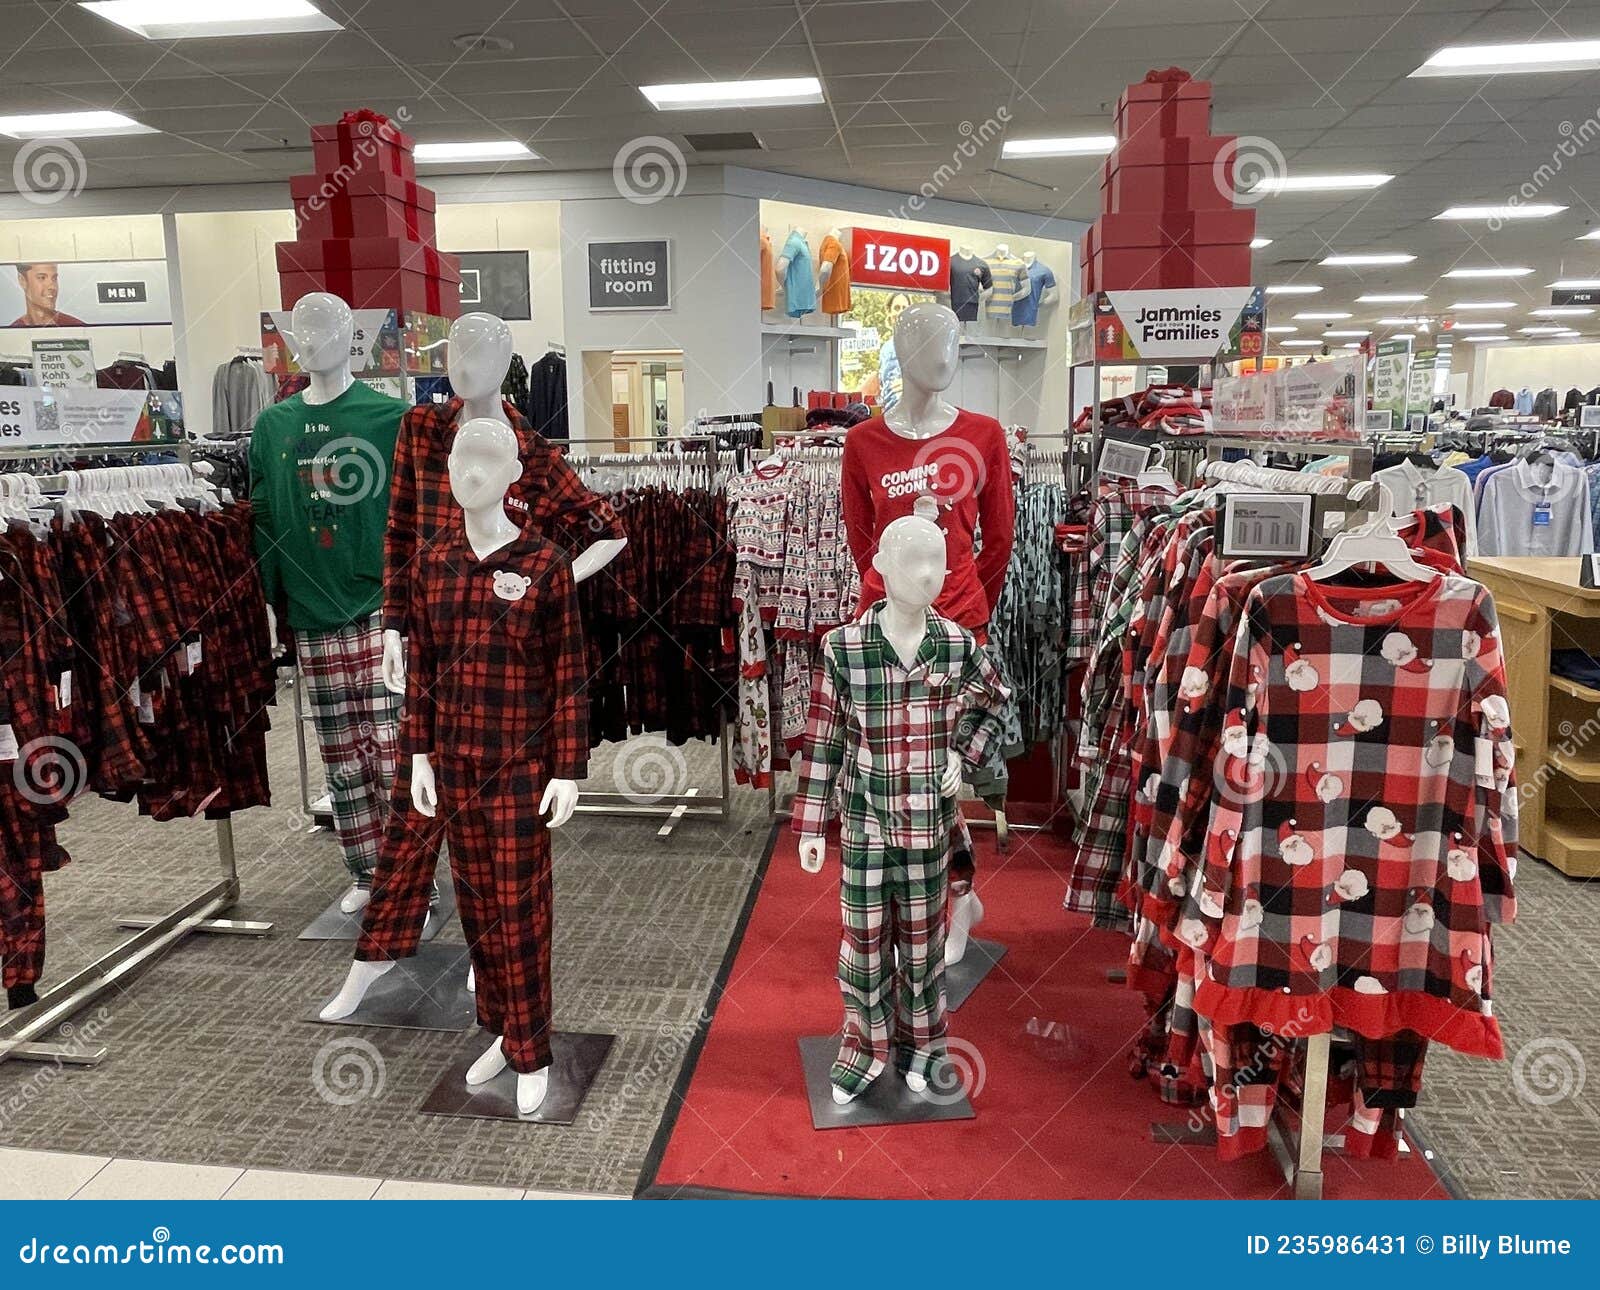 Kohls Retail Store Interior during the Holidays Pajamas Editorial